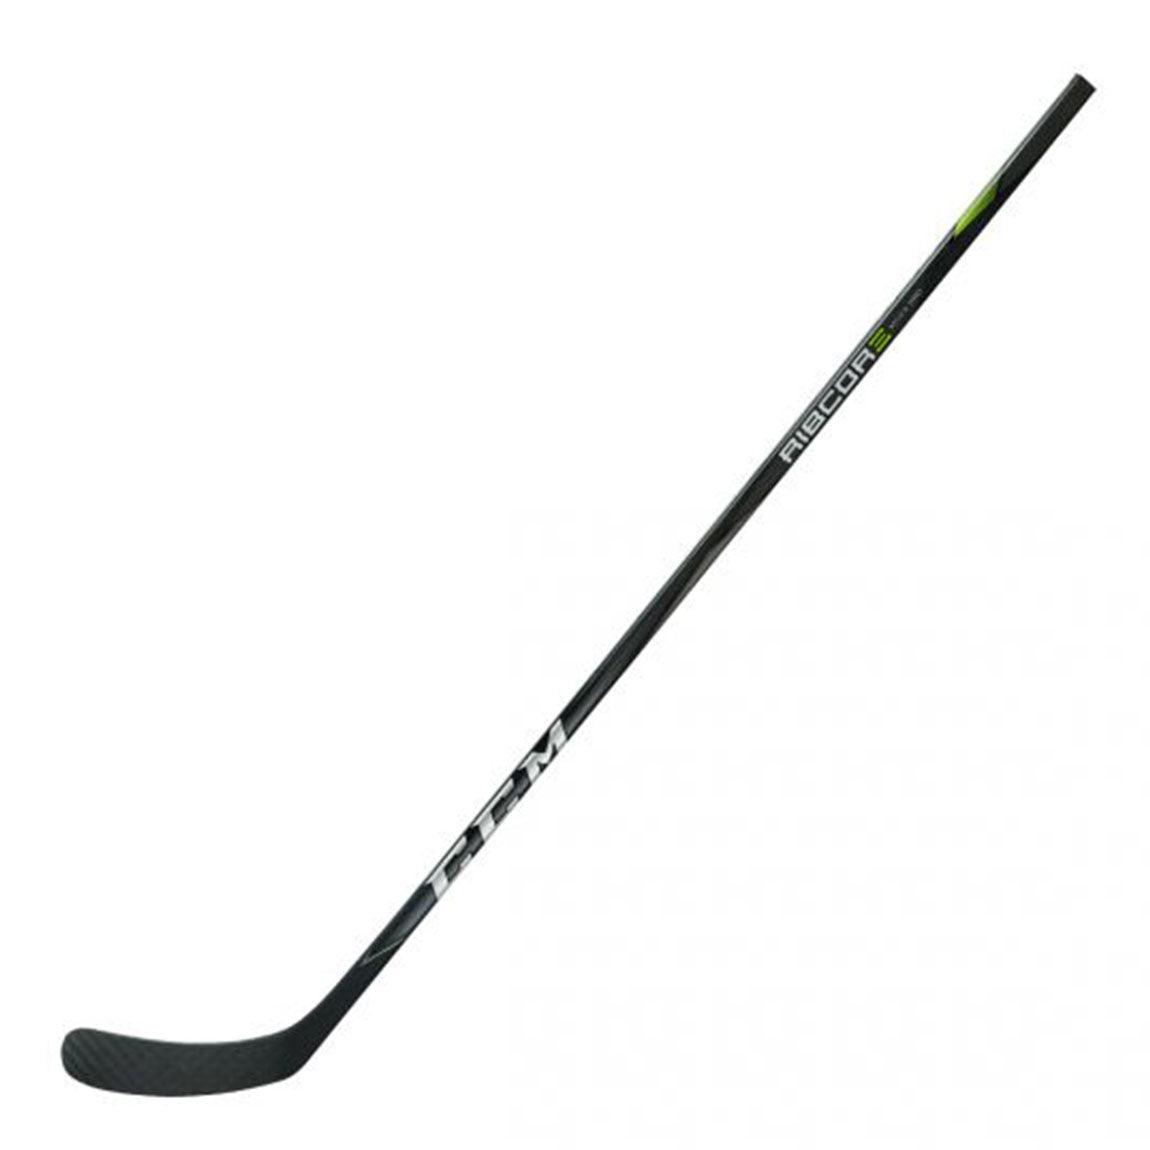 Ribcor Maxx Pro Hockey Stick - Senior - Sports Excellence